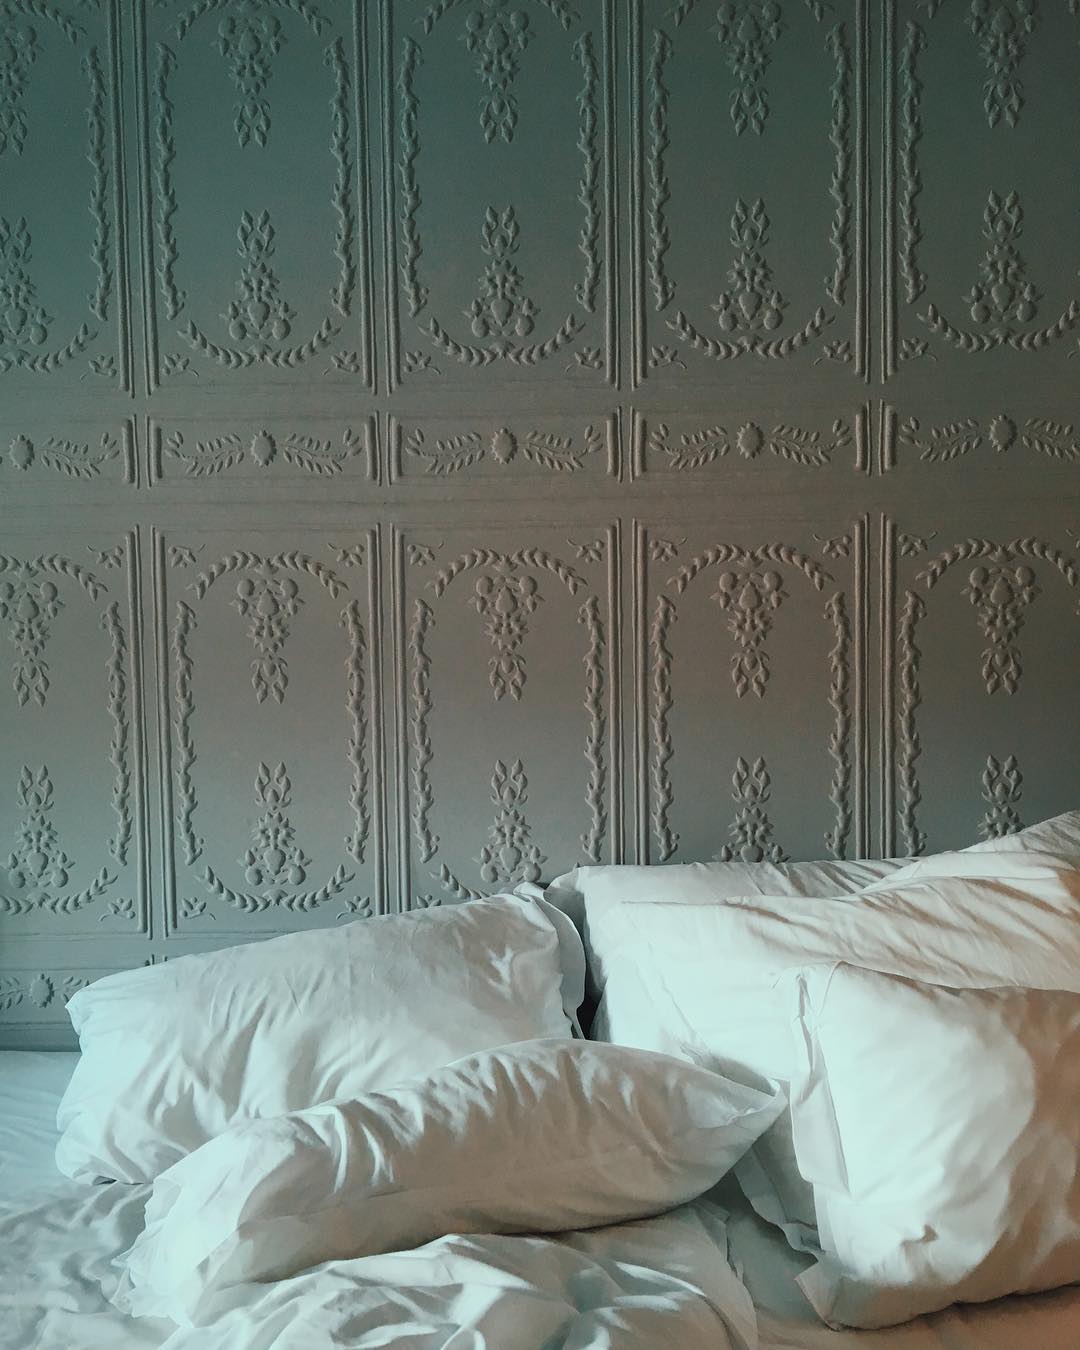  #whitesheets #hotellife #morningslikethese